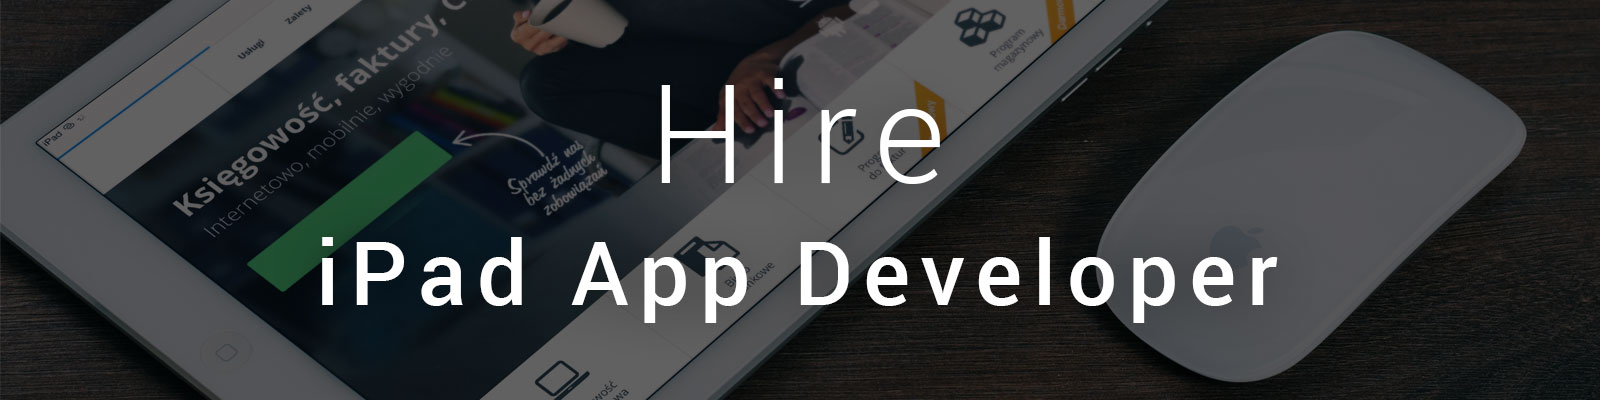 hire ipad app developer